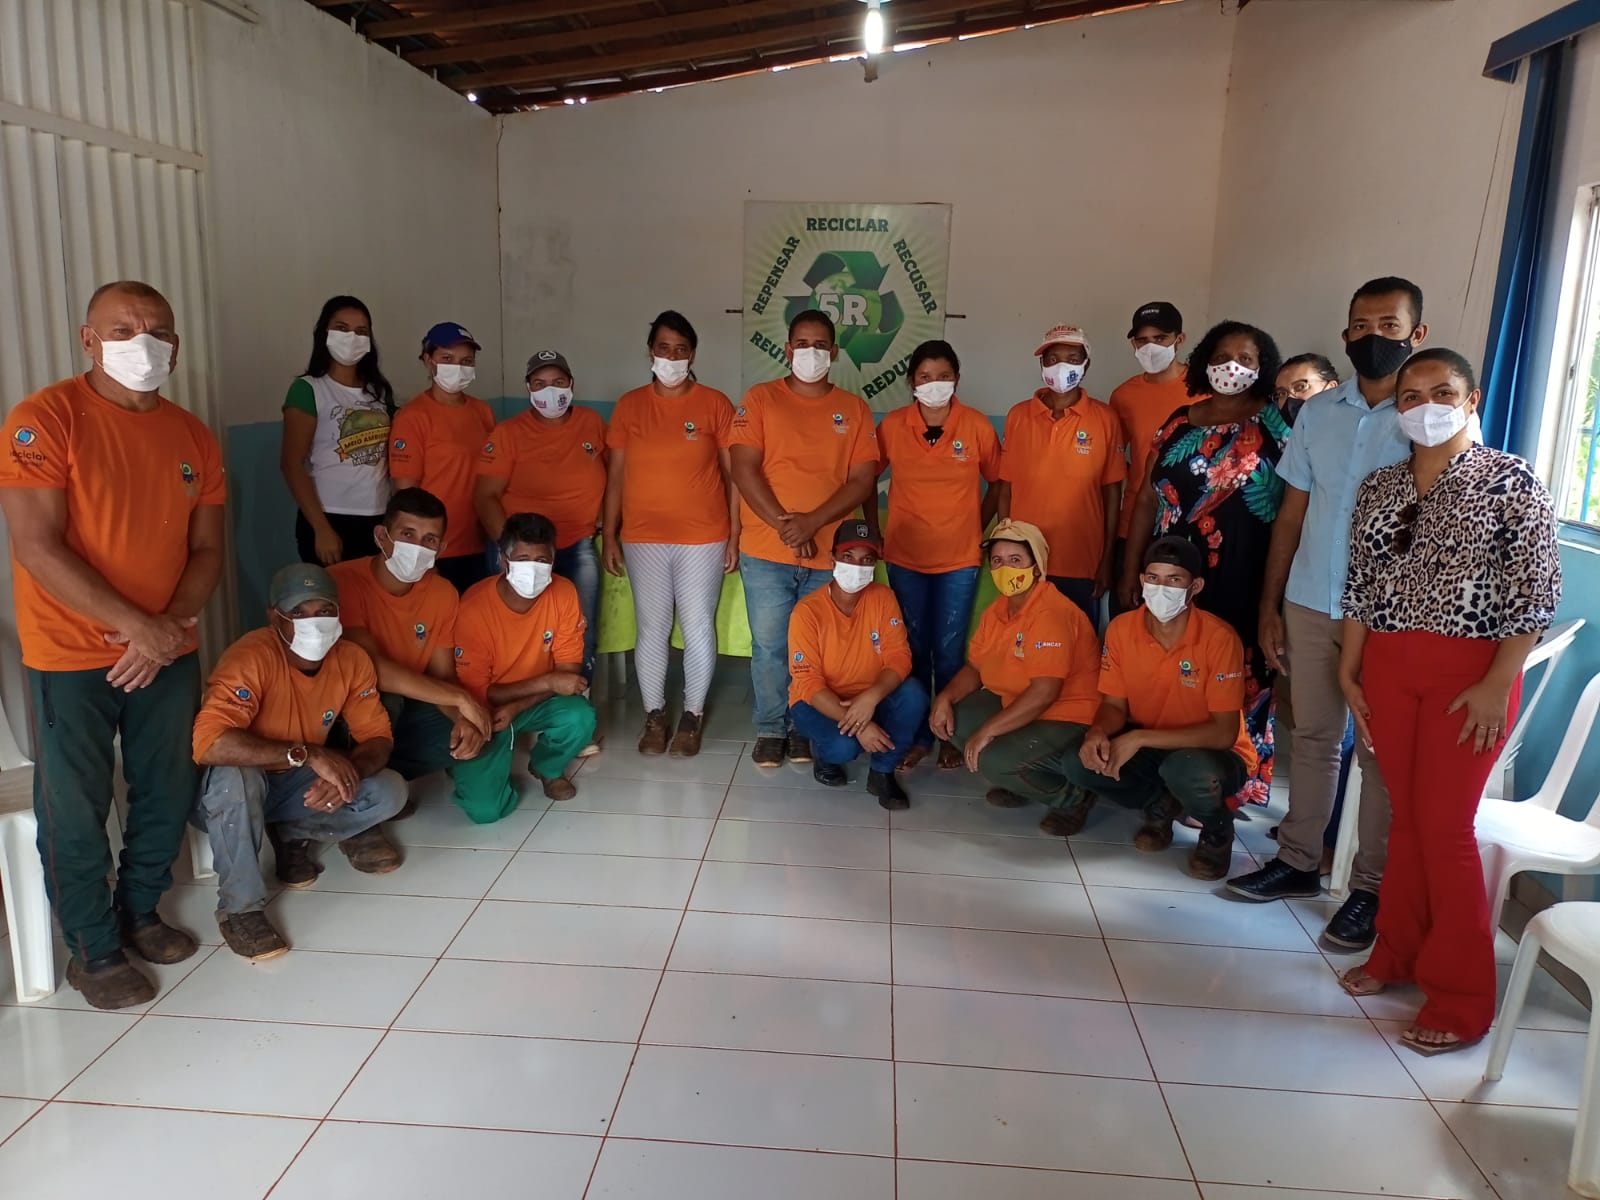 Cesol intermedia encontro entre cooperados de Caculé e Guanambi, que trabalham com materiais recicláveis